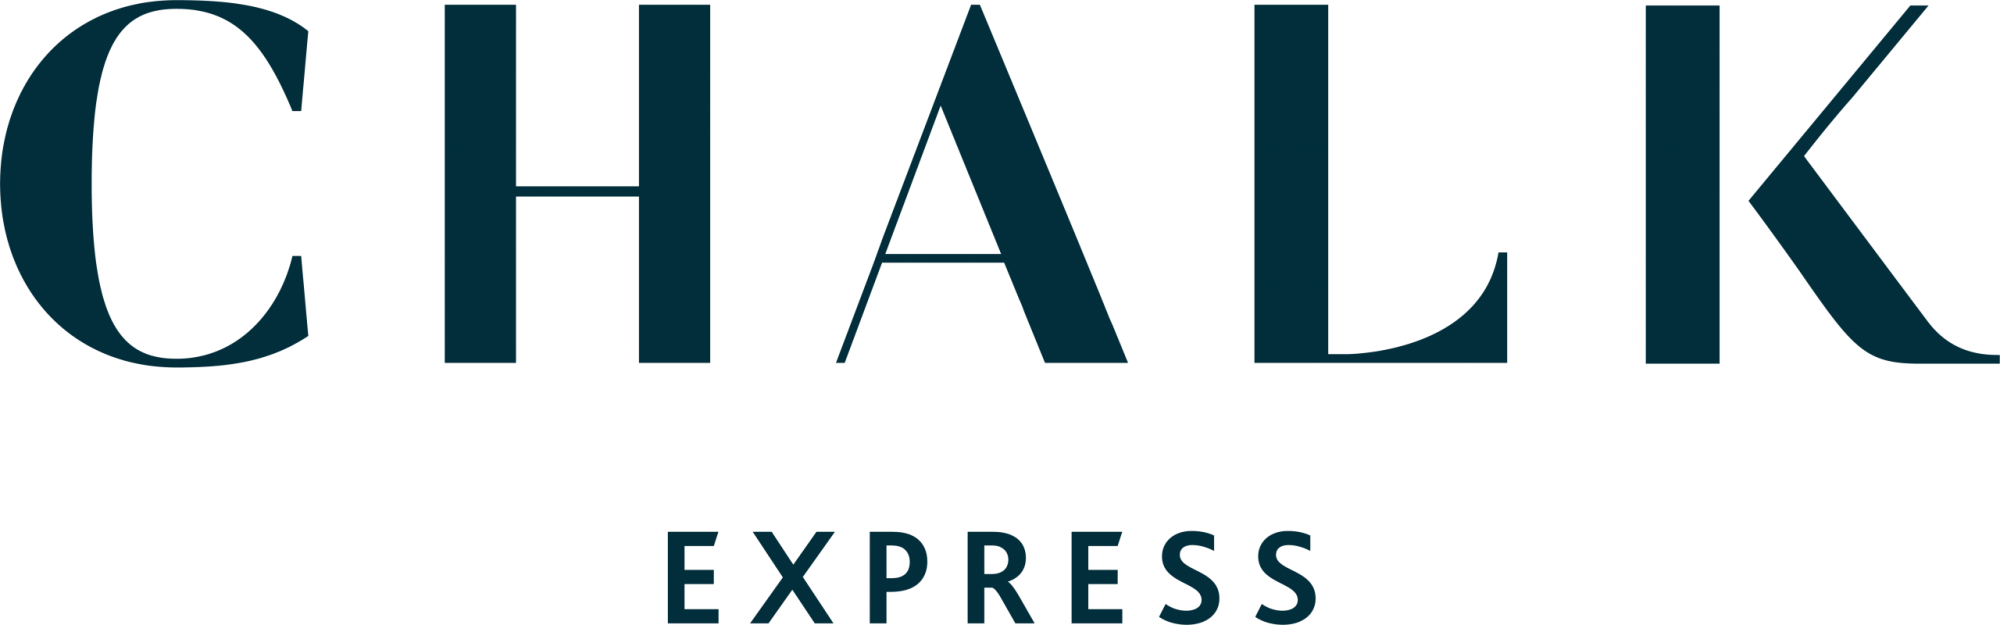 Chalk Express